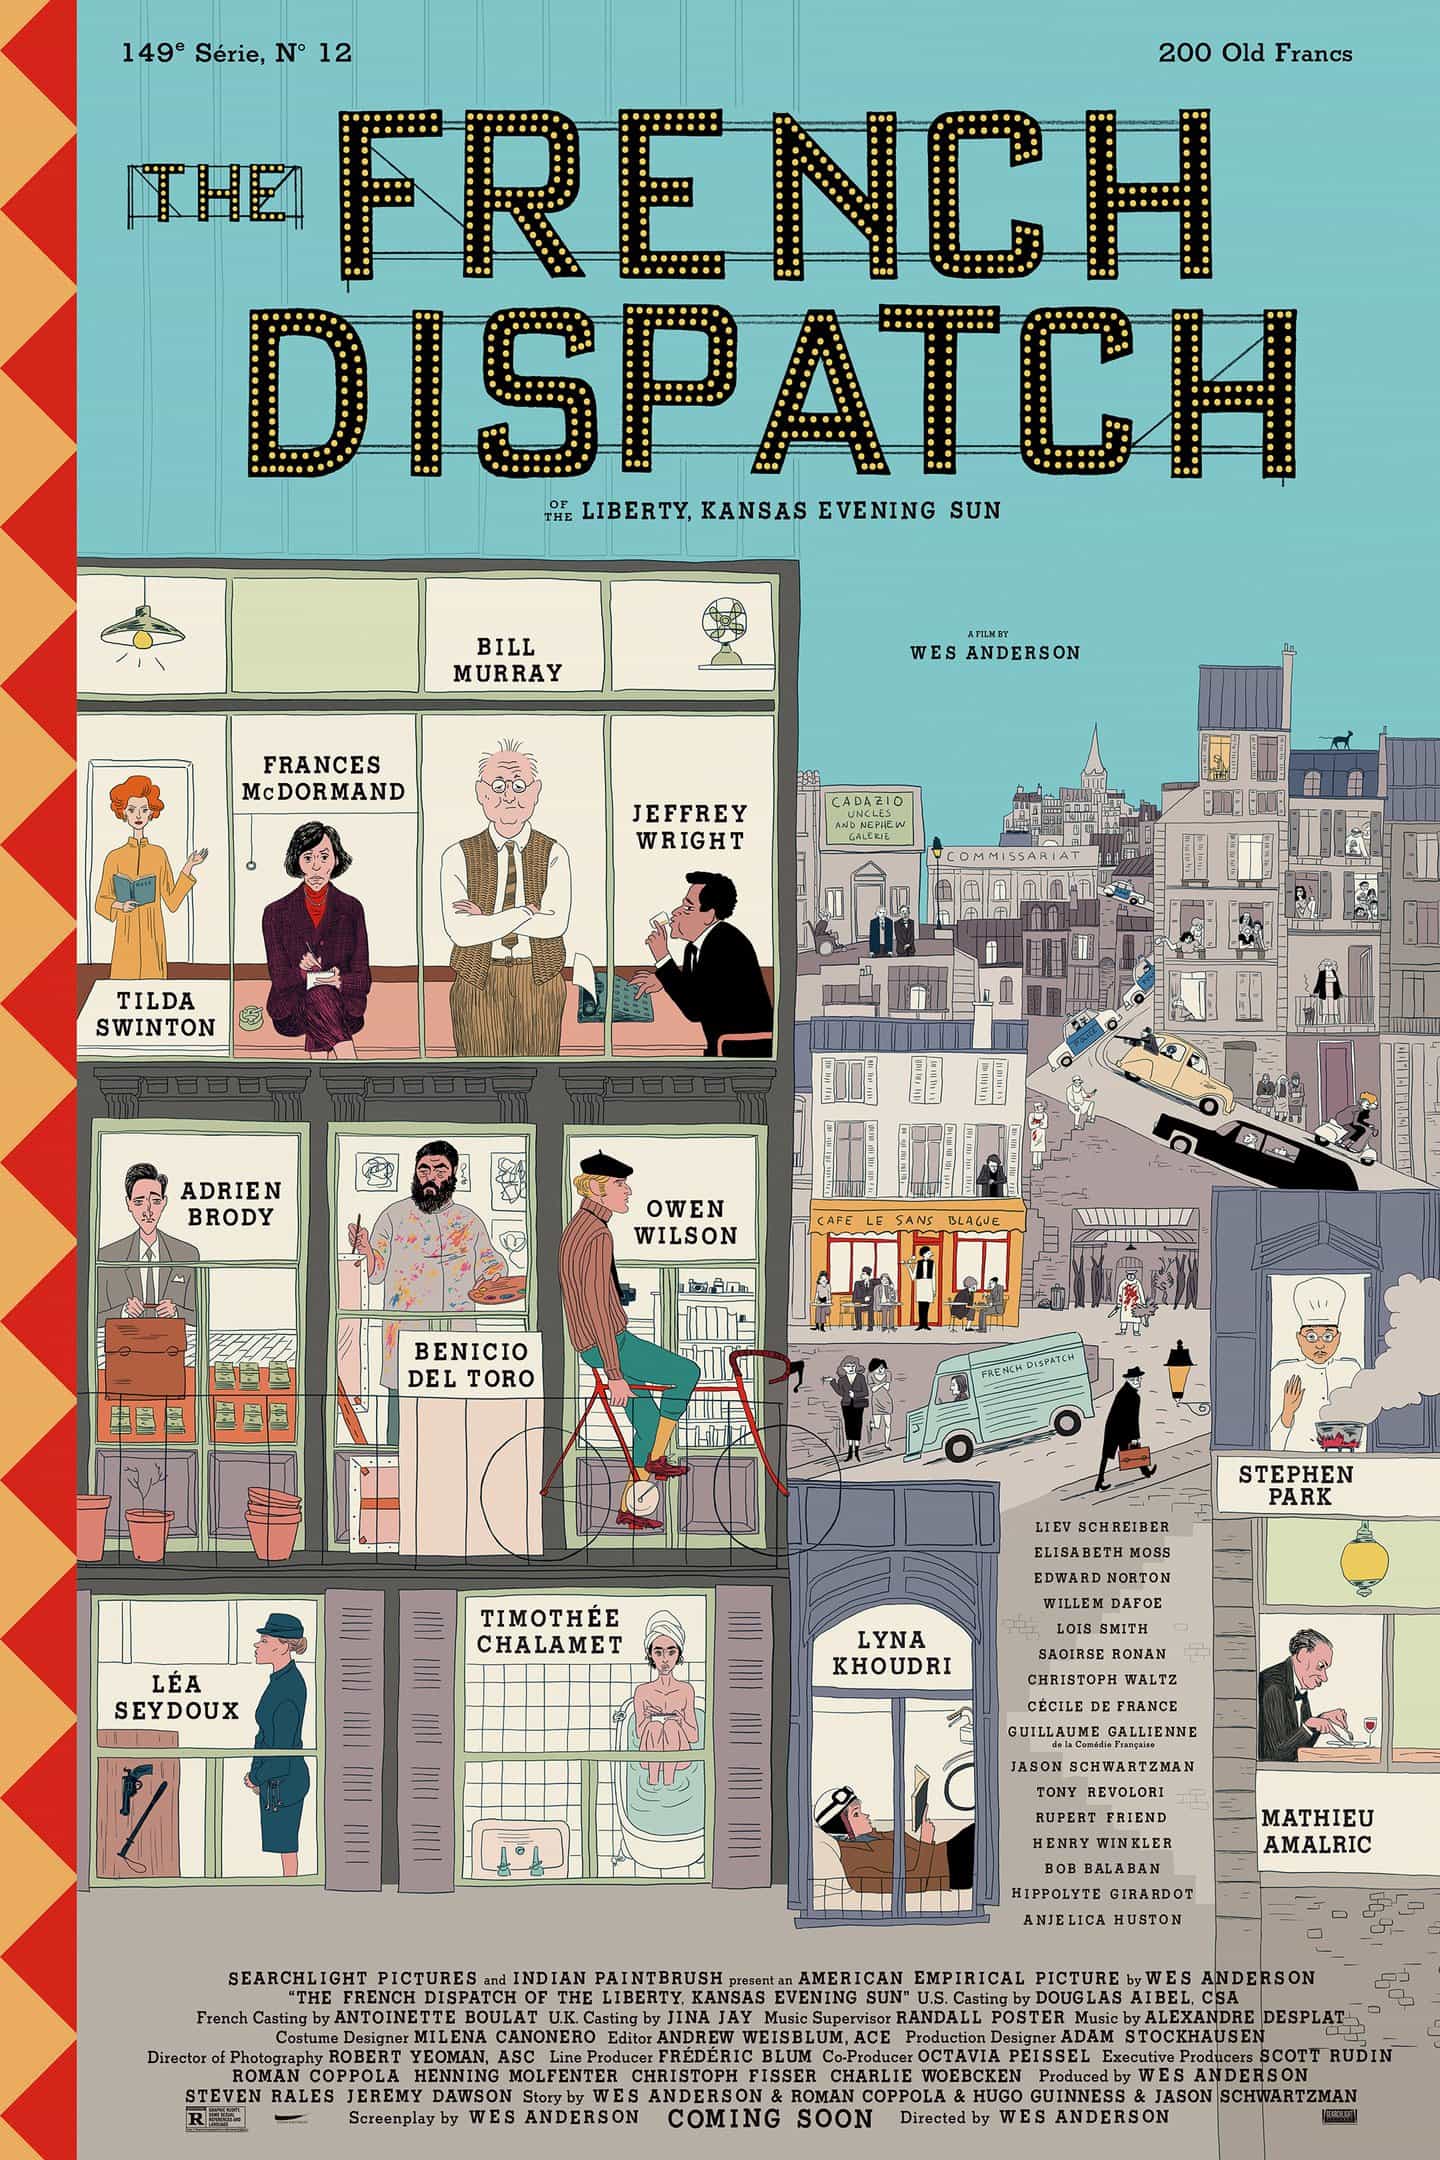 diseñador gráfico de Wes Anderson Erica Dorn explica El cartel francés de Despacho